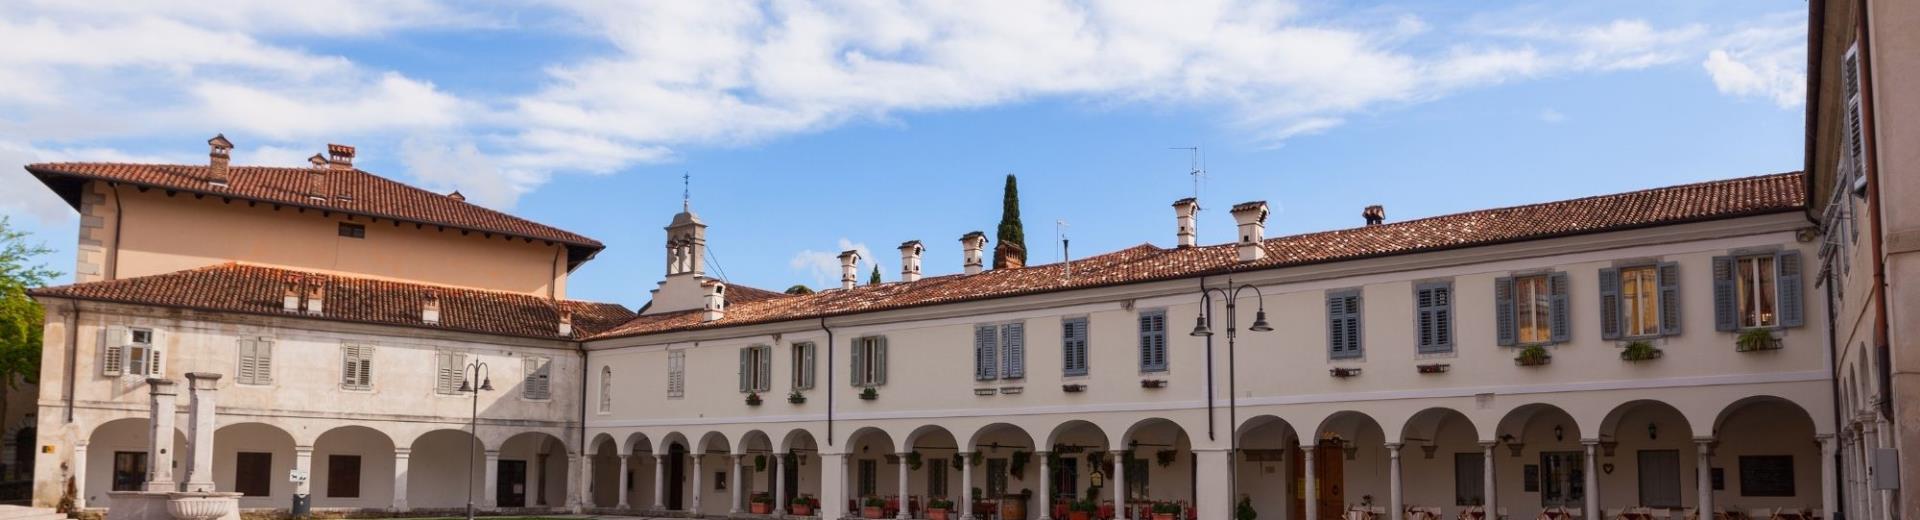 Palazzo Lantieri | BW Gorizia Palace